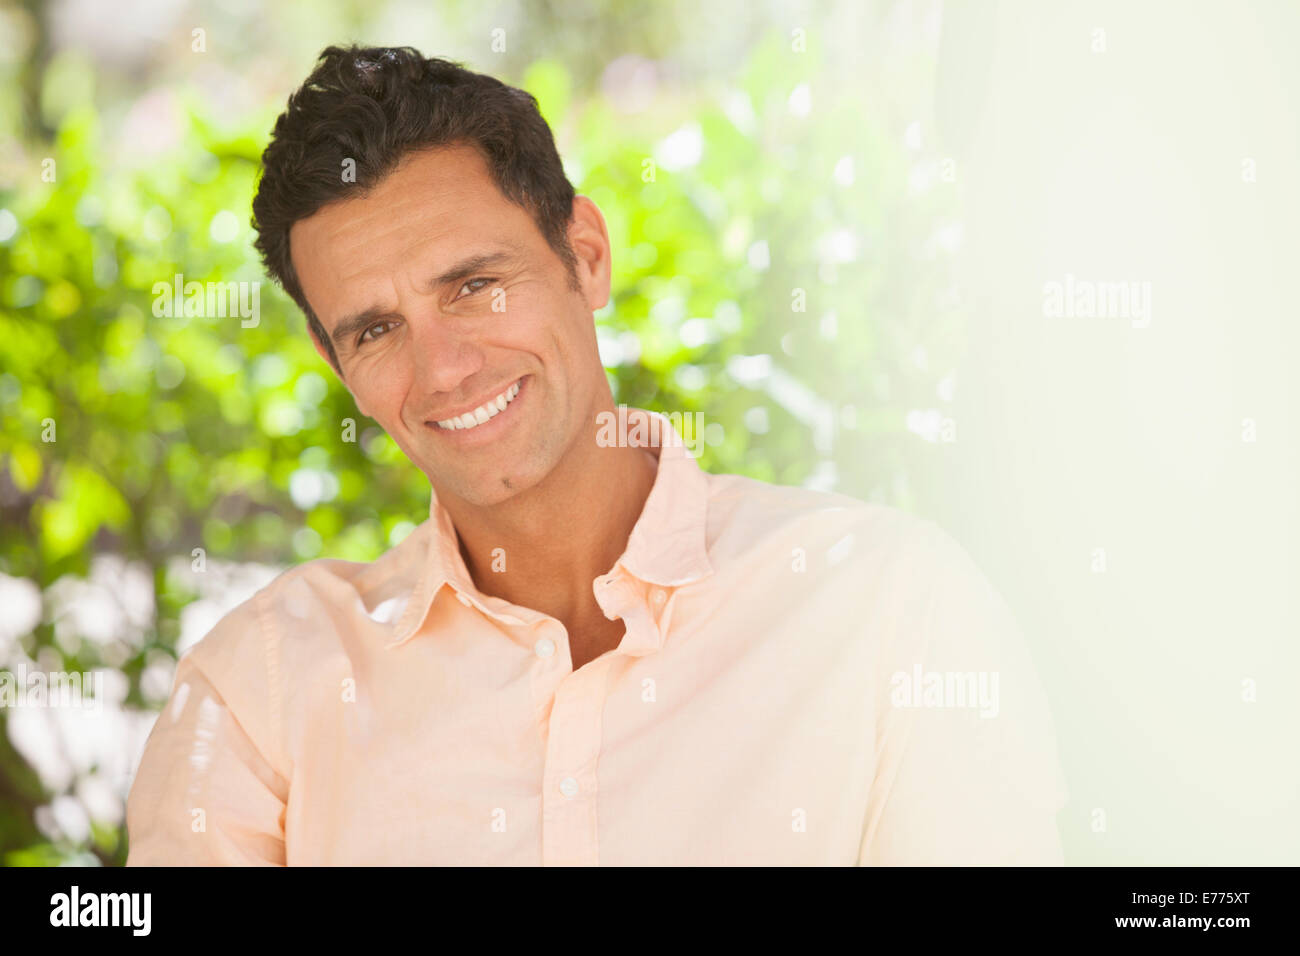 Hombre sonriente en el exterior Foto de stock